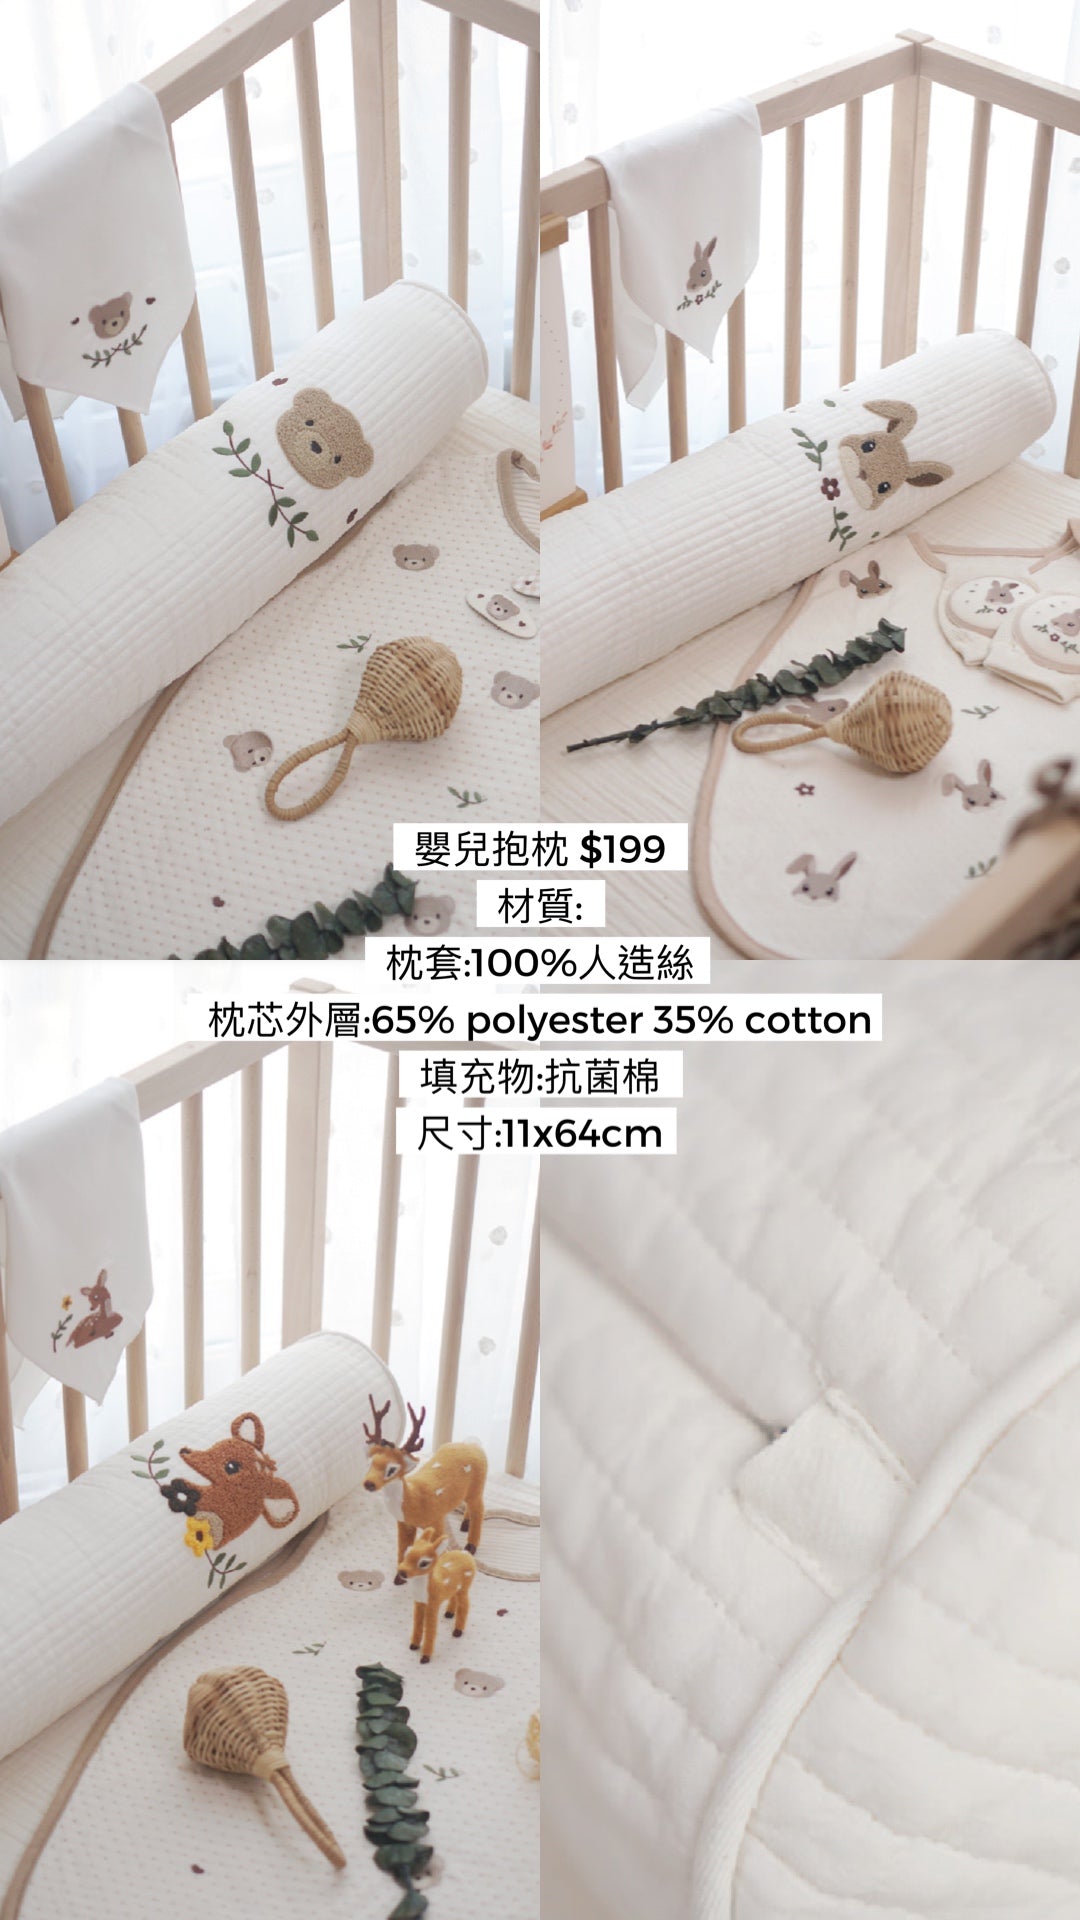 Koongs koongs 韓國制嬰兒平枕